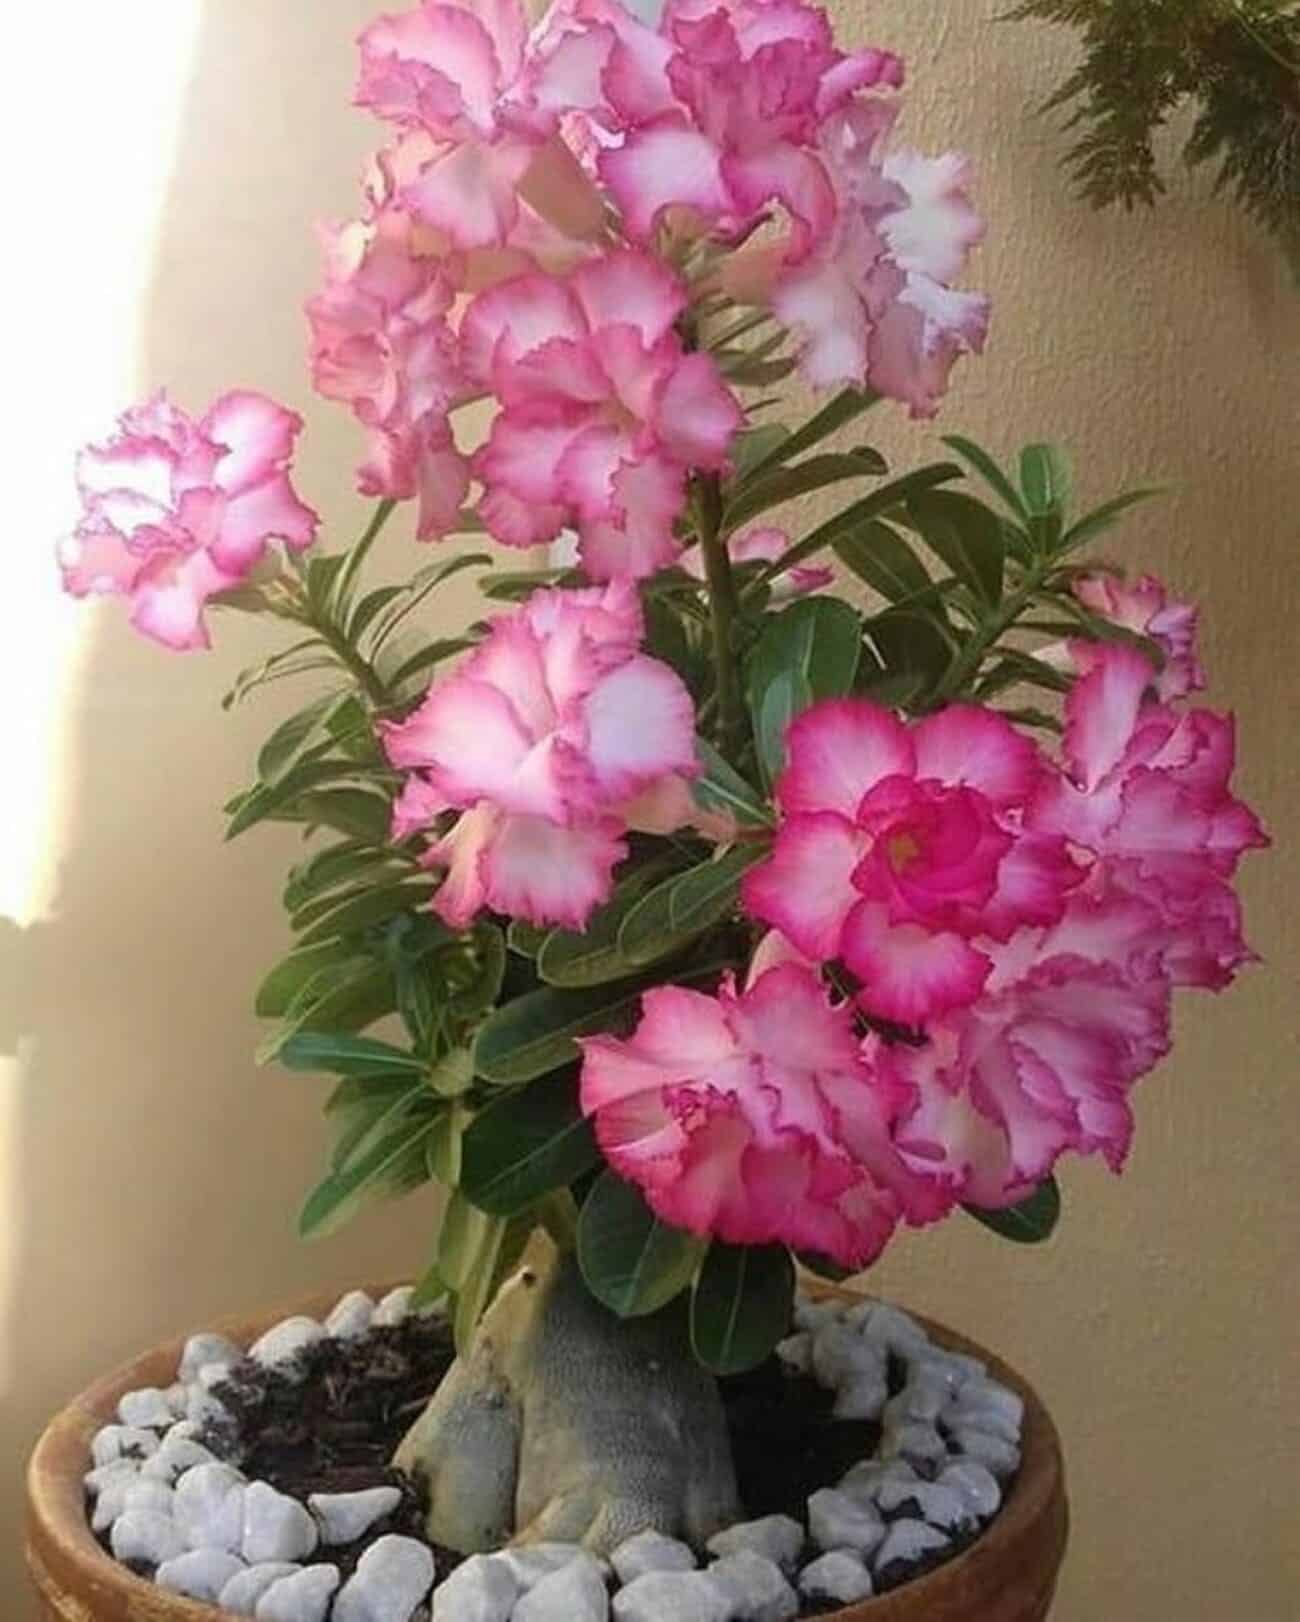 Rosa do deserto: uma planta exótica e bela.